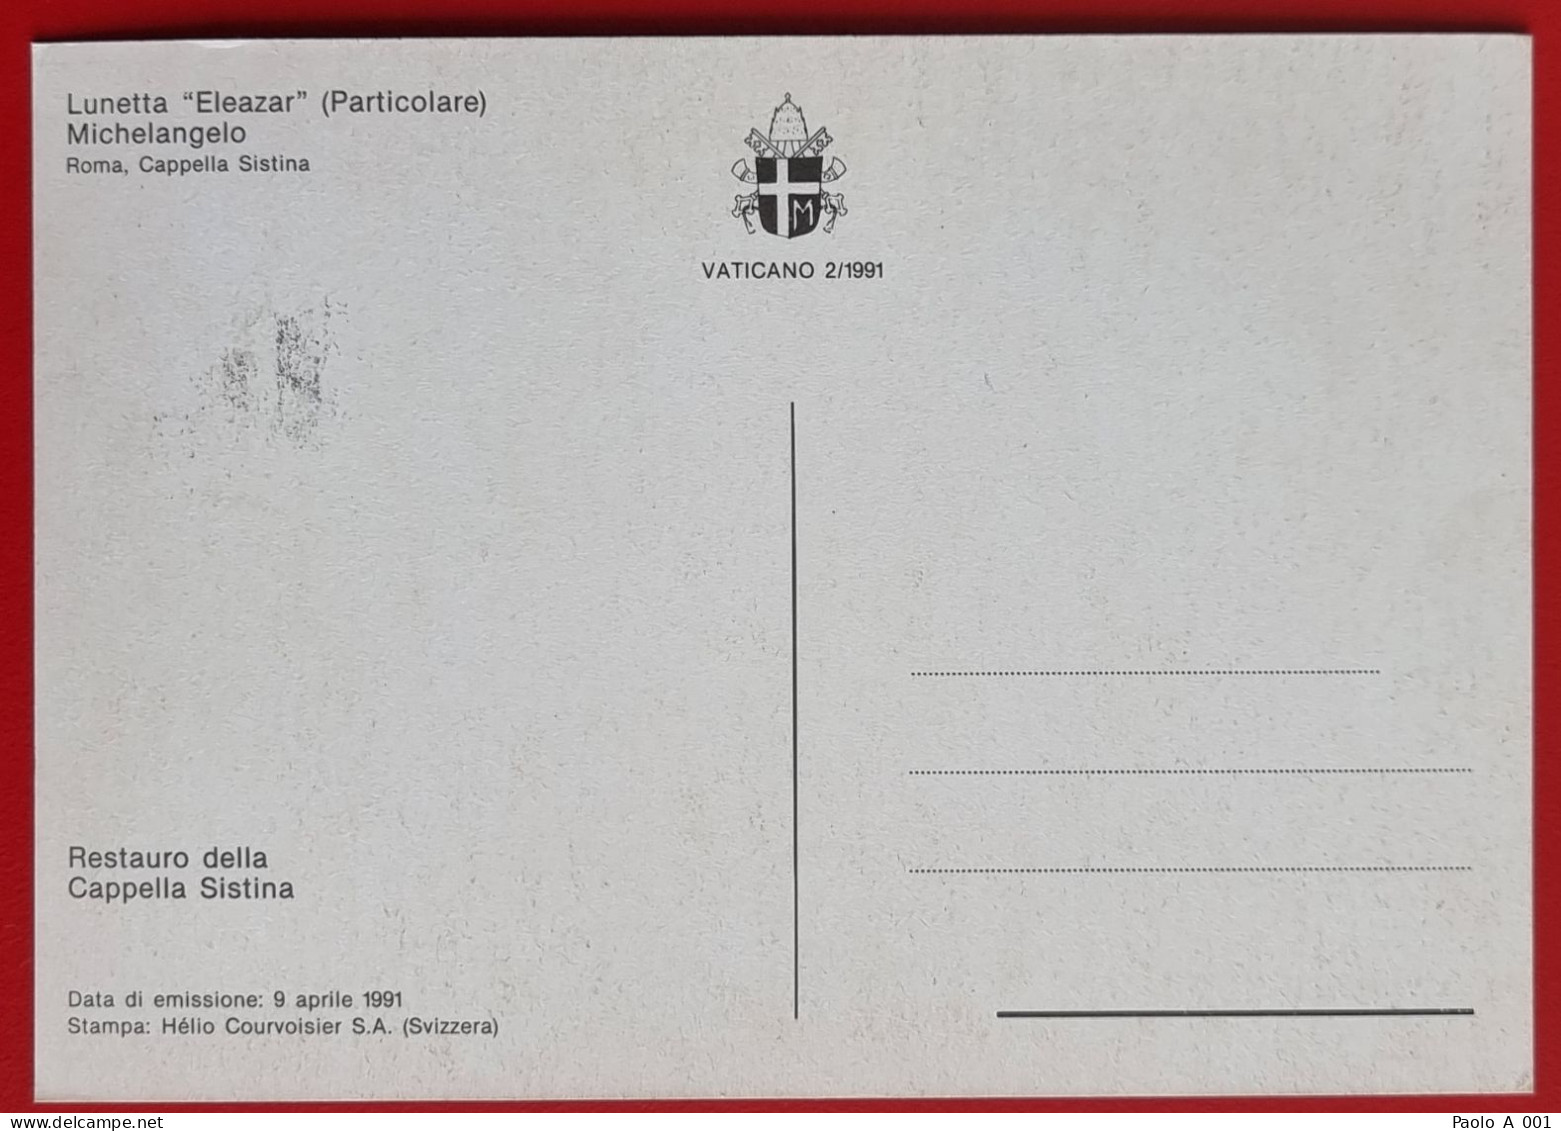 VATICANO VATIKAN VATICAN 1991 LUNETTA ELEAZAR CAPPELLA SISTINA SISTINE CHAPEL MAXIMUM CARD - Storia Postale